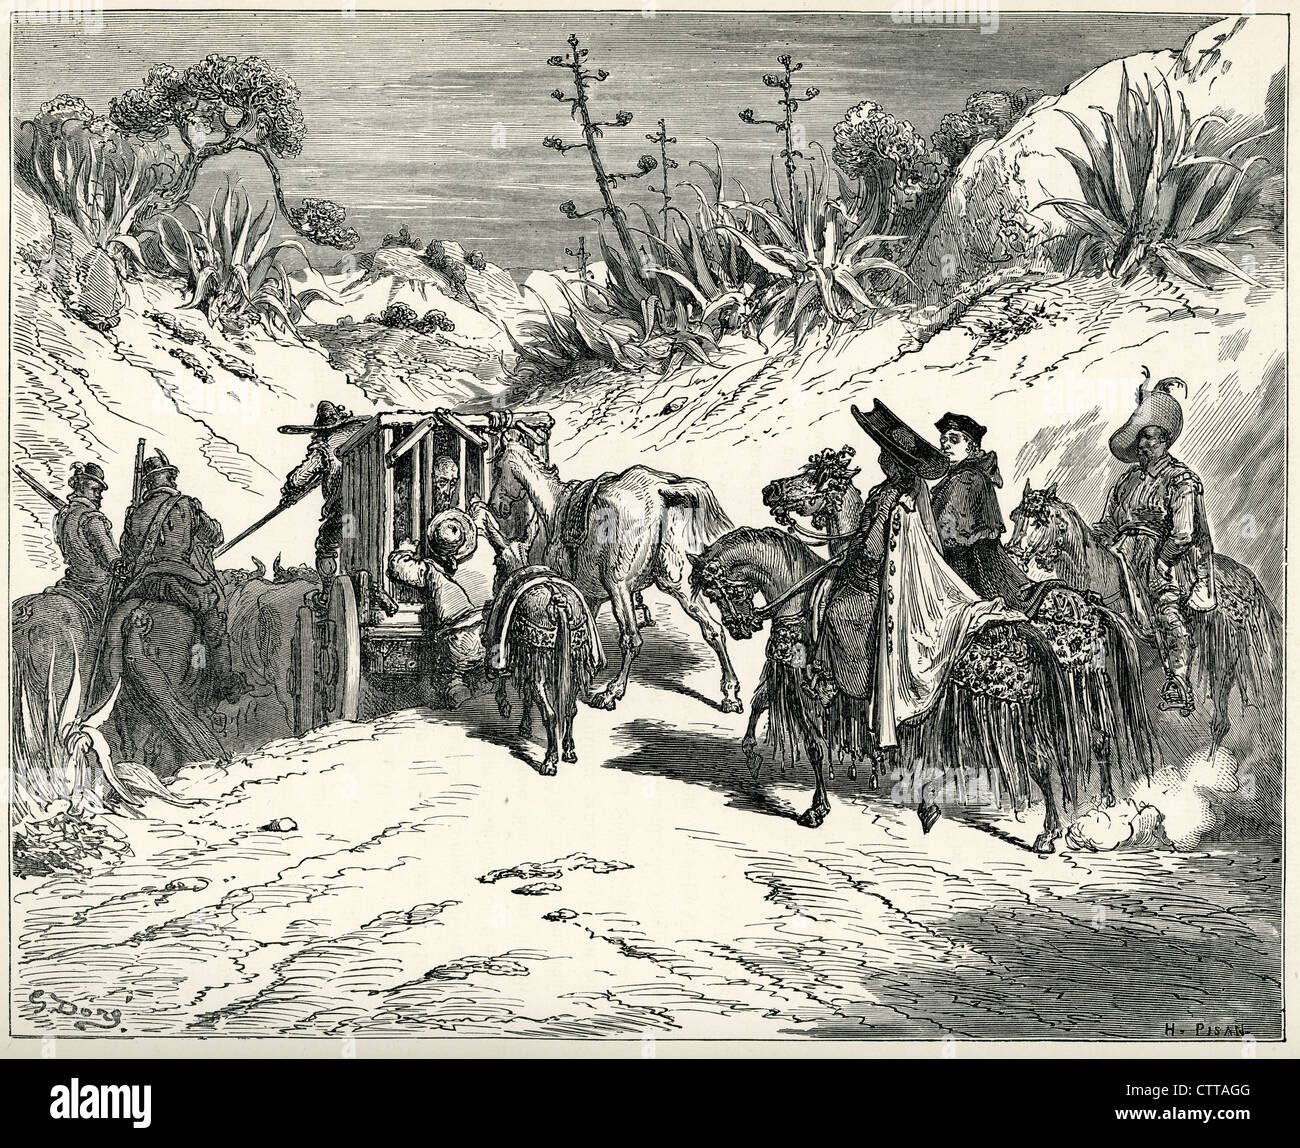 Pfarrer war sehr aufmerksam und glaubte ihm ein Mann ein gutes Urteilsvermögen. Illustration von Gustave Dore von Don Quijote. Stockfoto